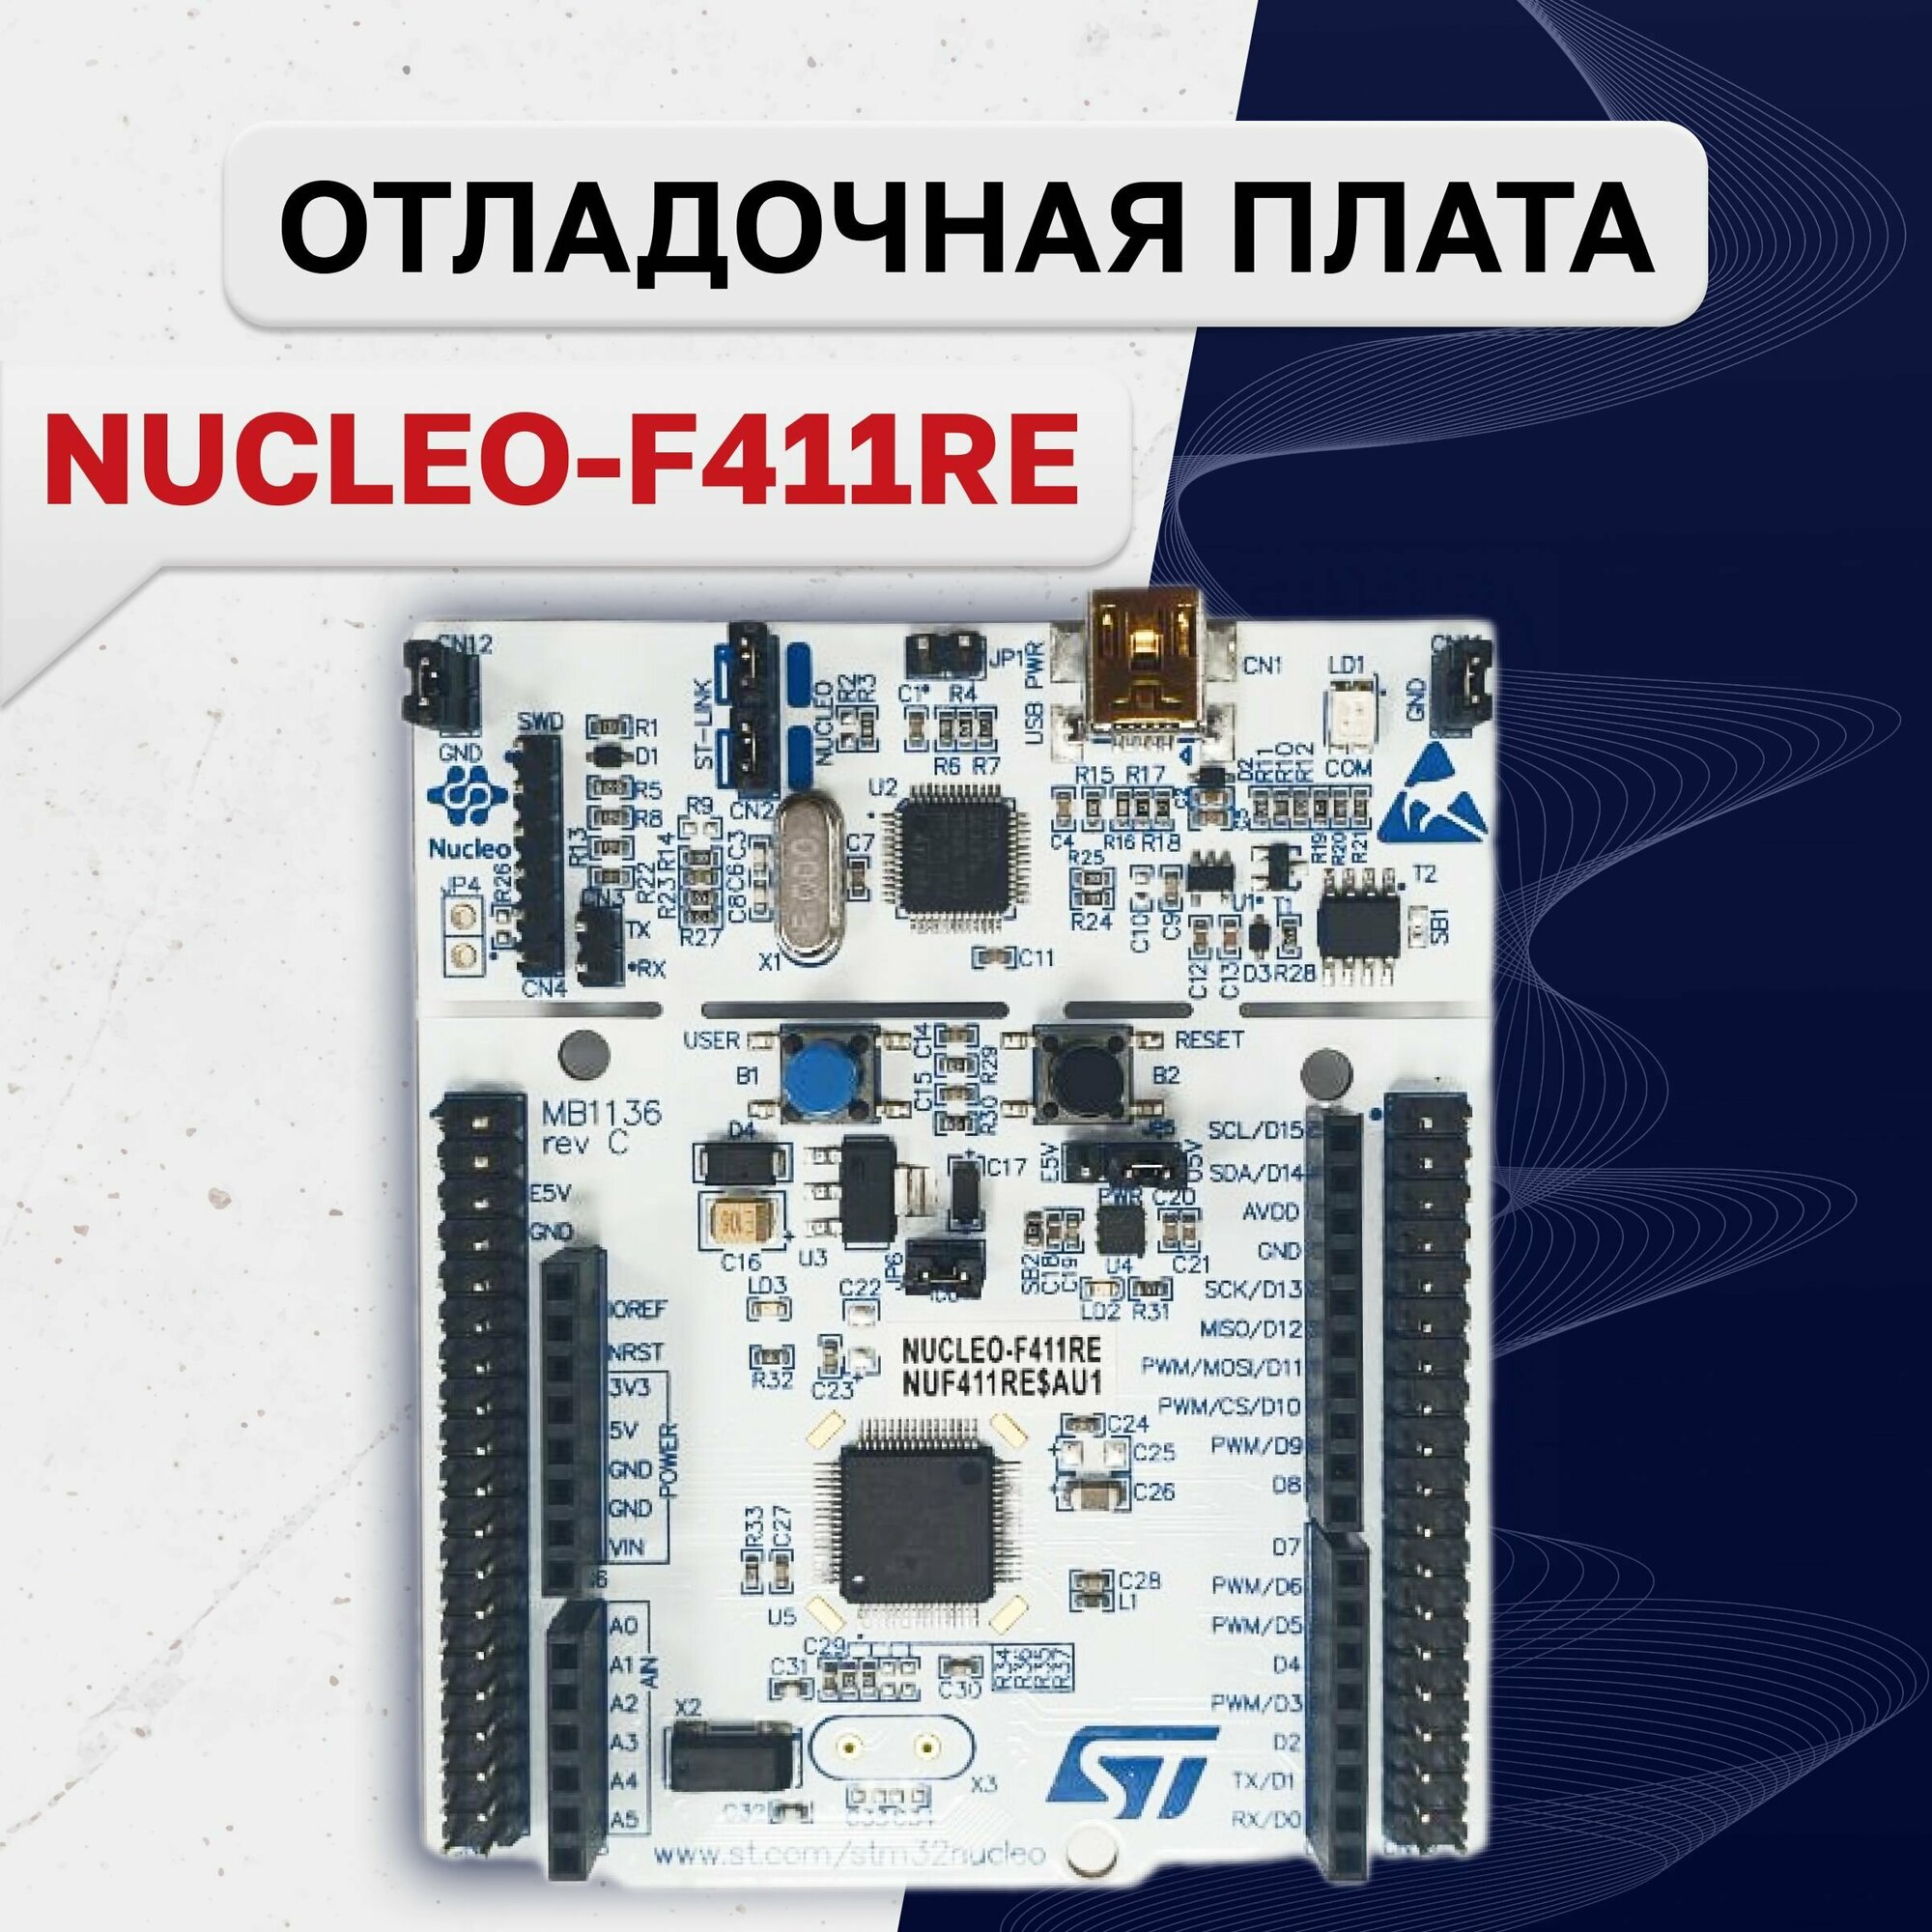 NUCLEO-F411RE, Отладочная плата на базе MCU STM32F411RET6